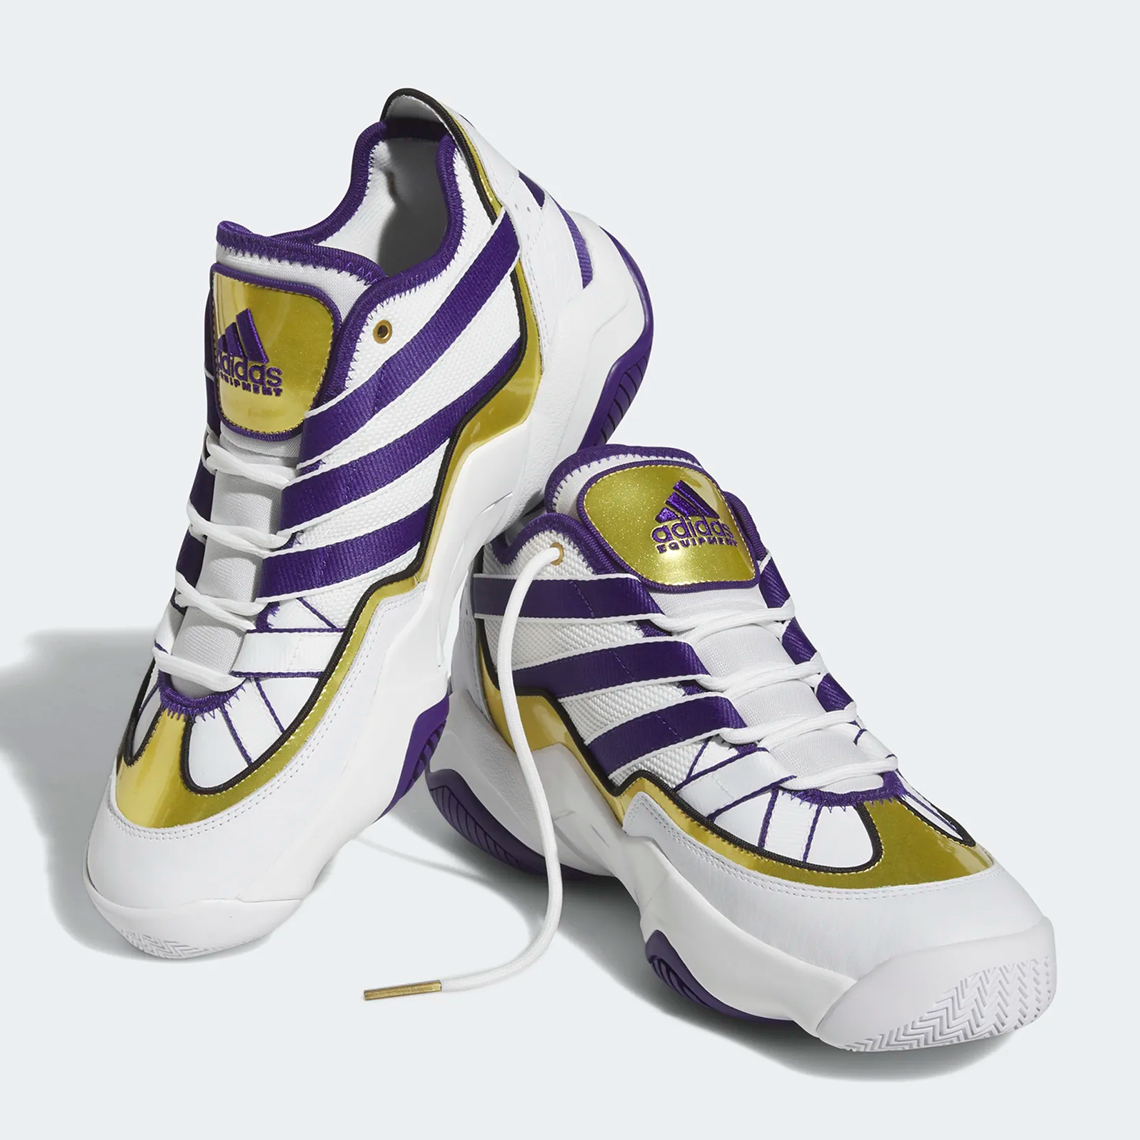 Adidas Top Ten 2010 Lakers Hq4624 6